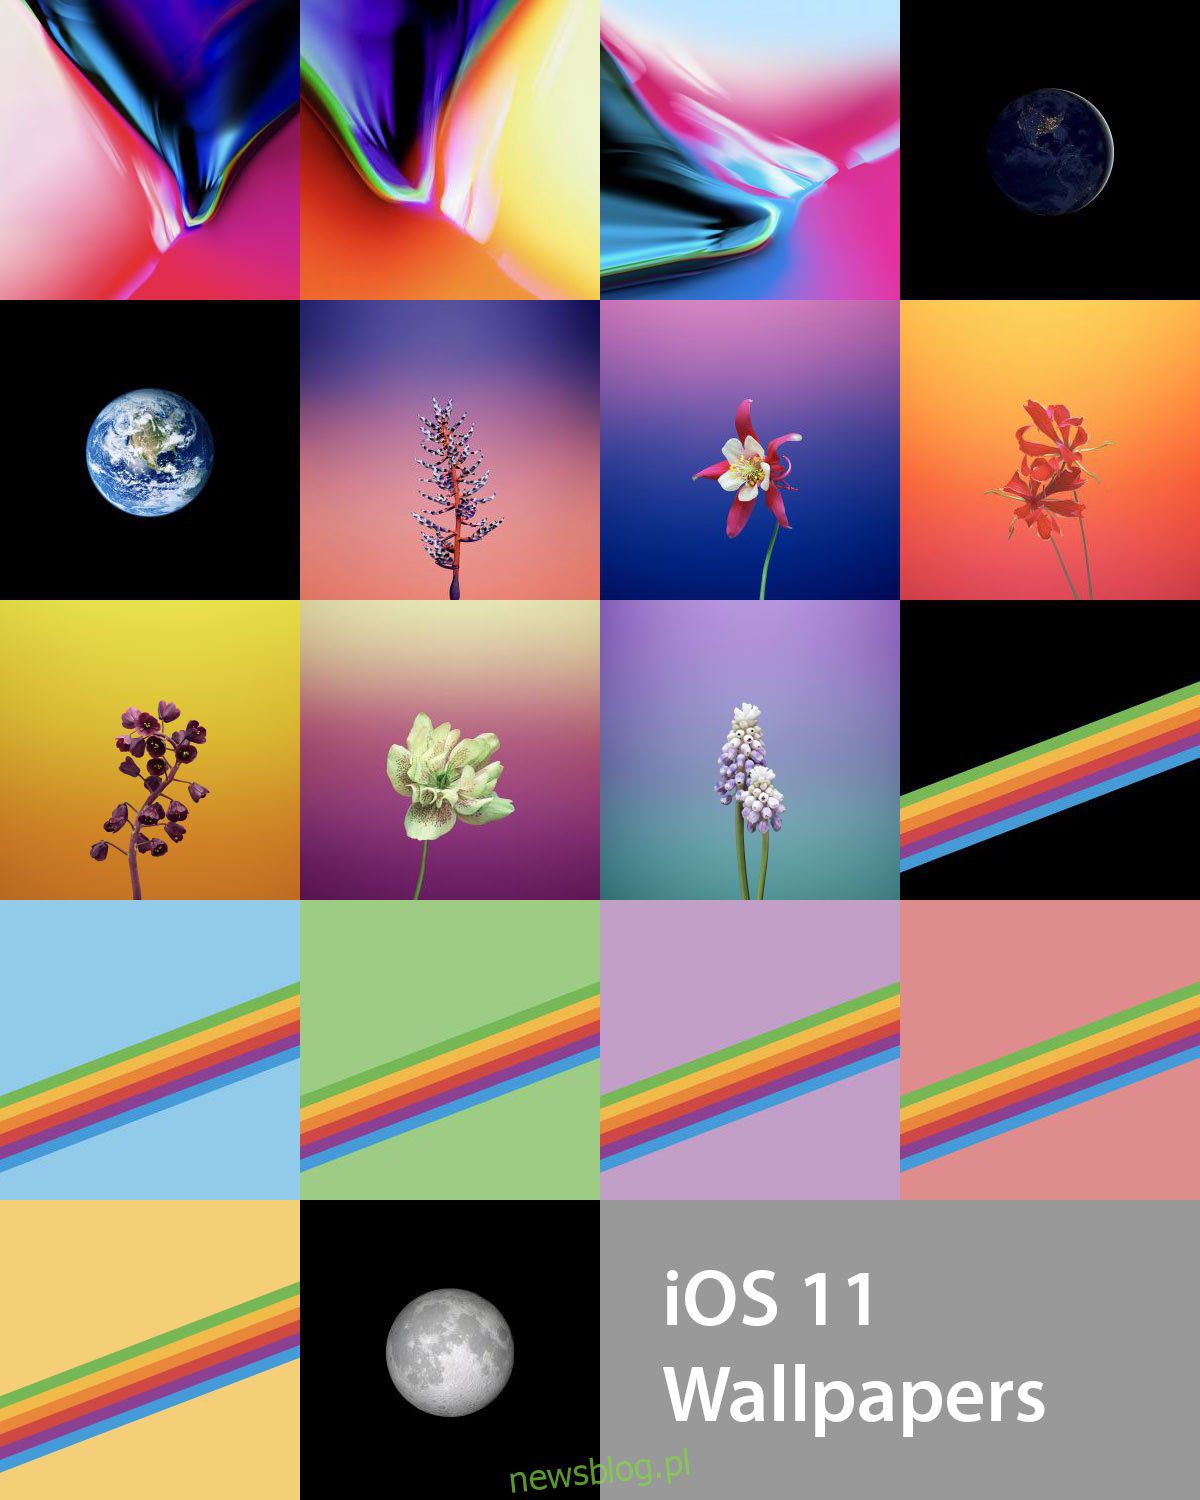 Bộ sưu tập 25 hình nền cho iPhone đẹp, chất lượng cao - Phần 1